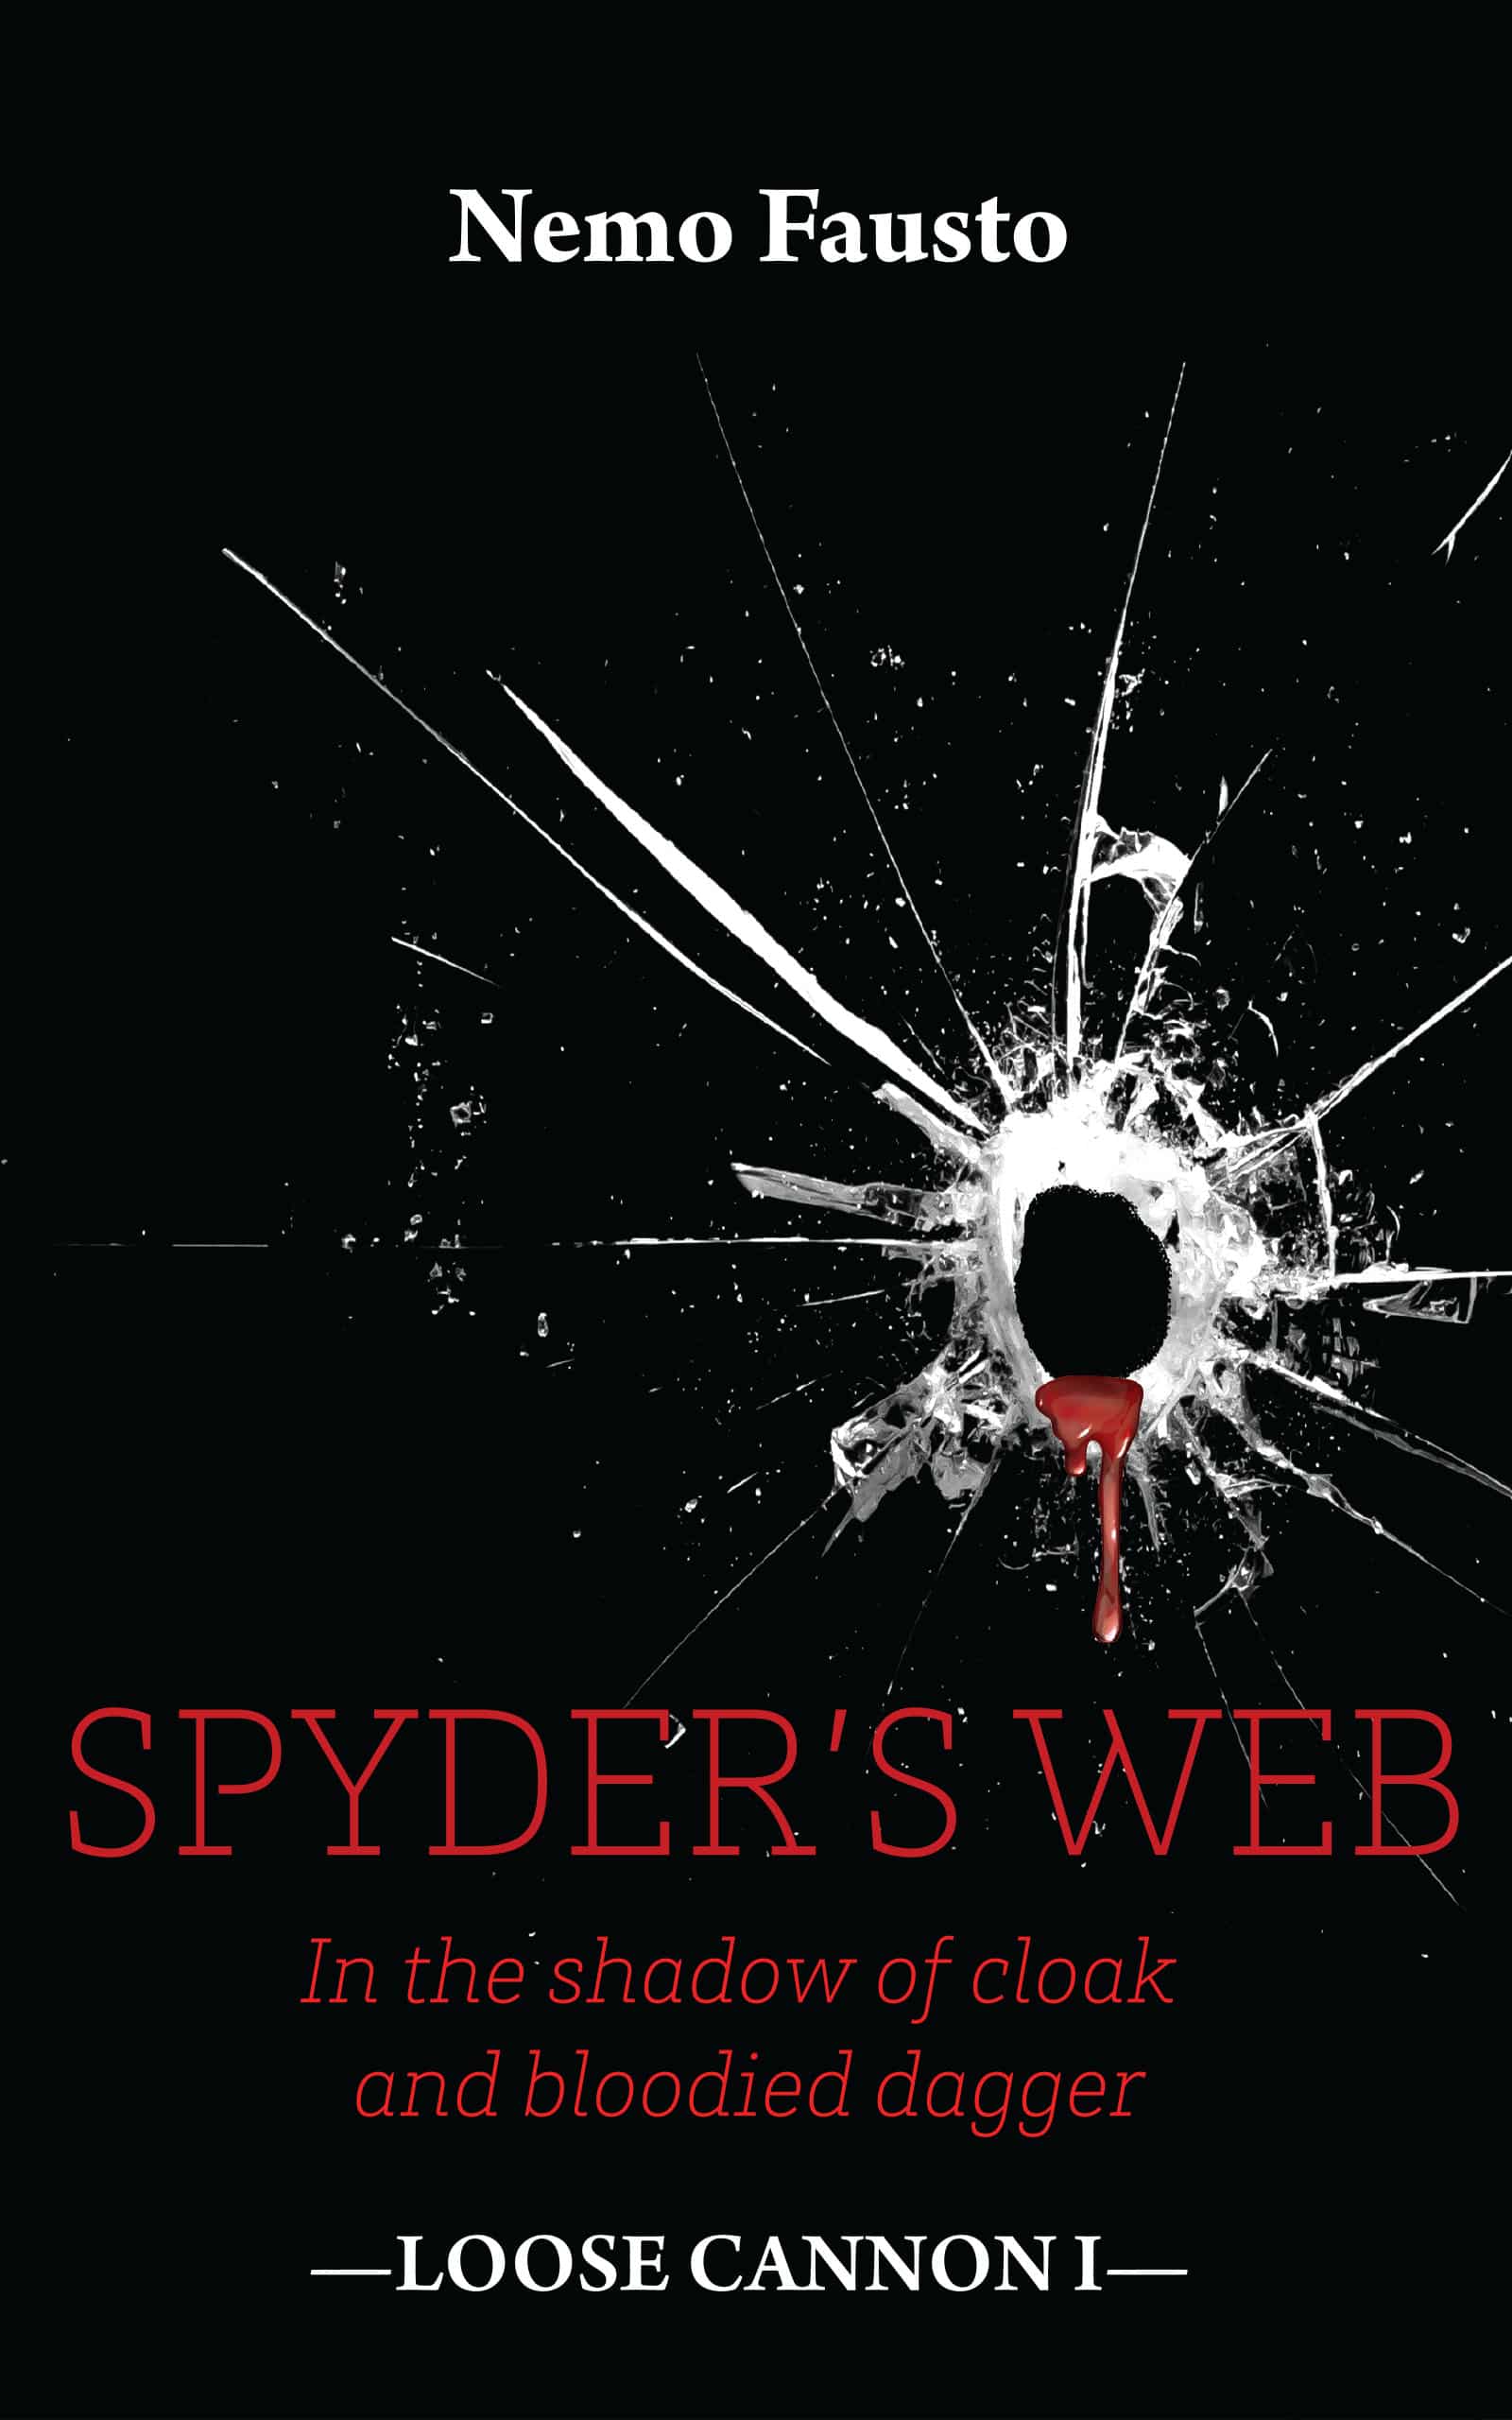 Spyders’s Web, de Nemo Fausto